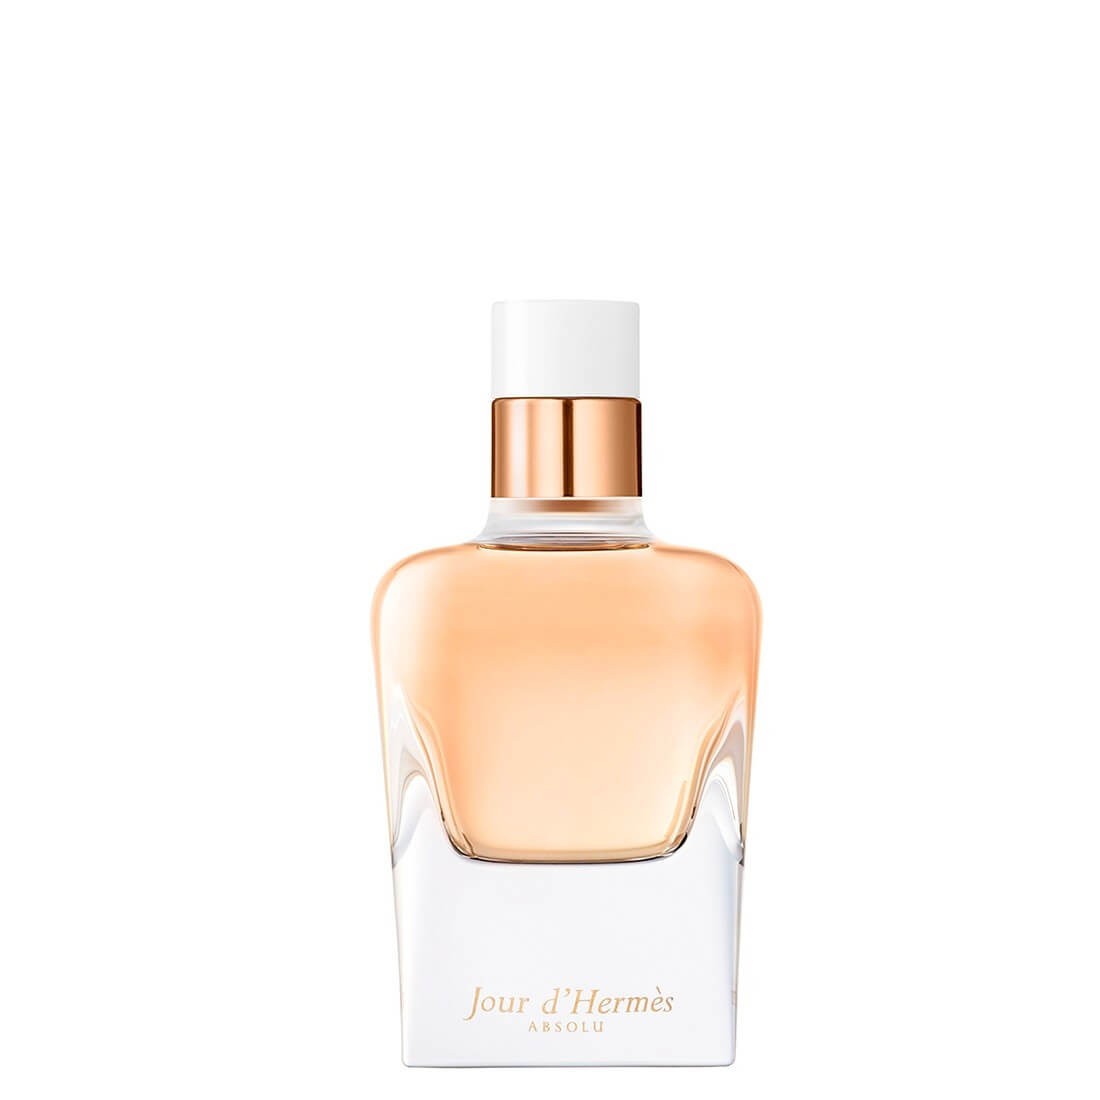 Hermès - Jour D'Hermès Absolu Eau de Parfum - 85 ml